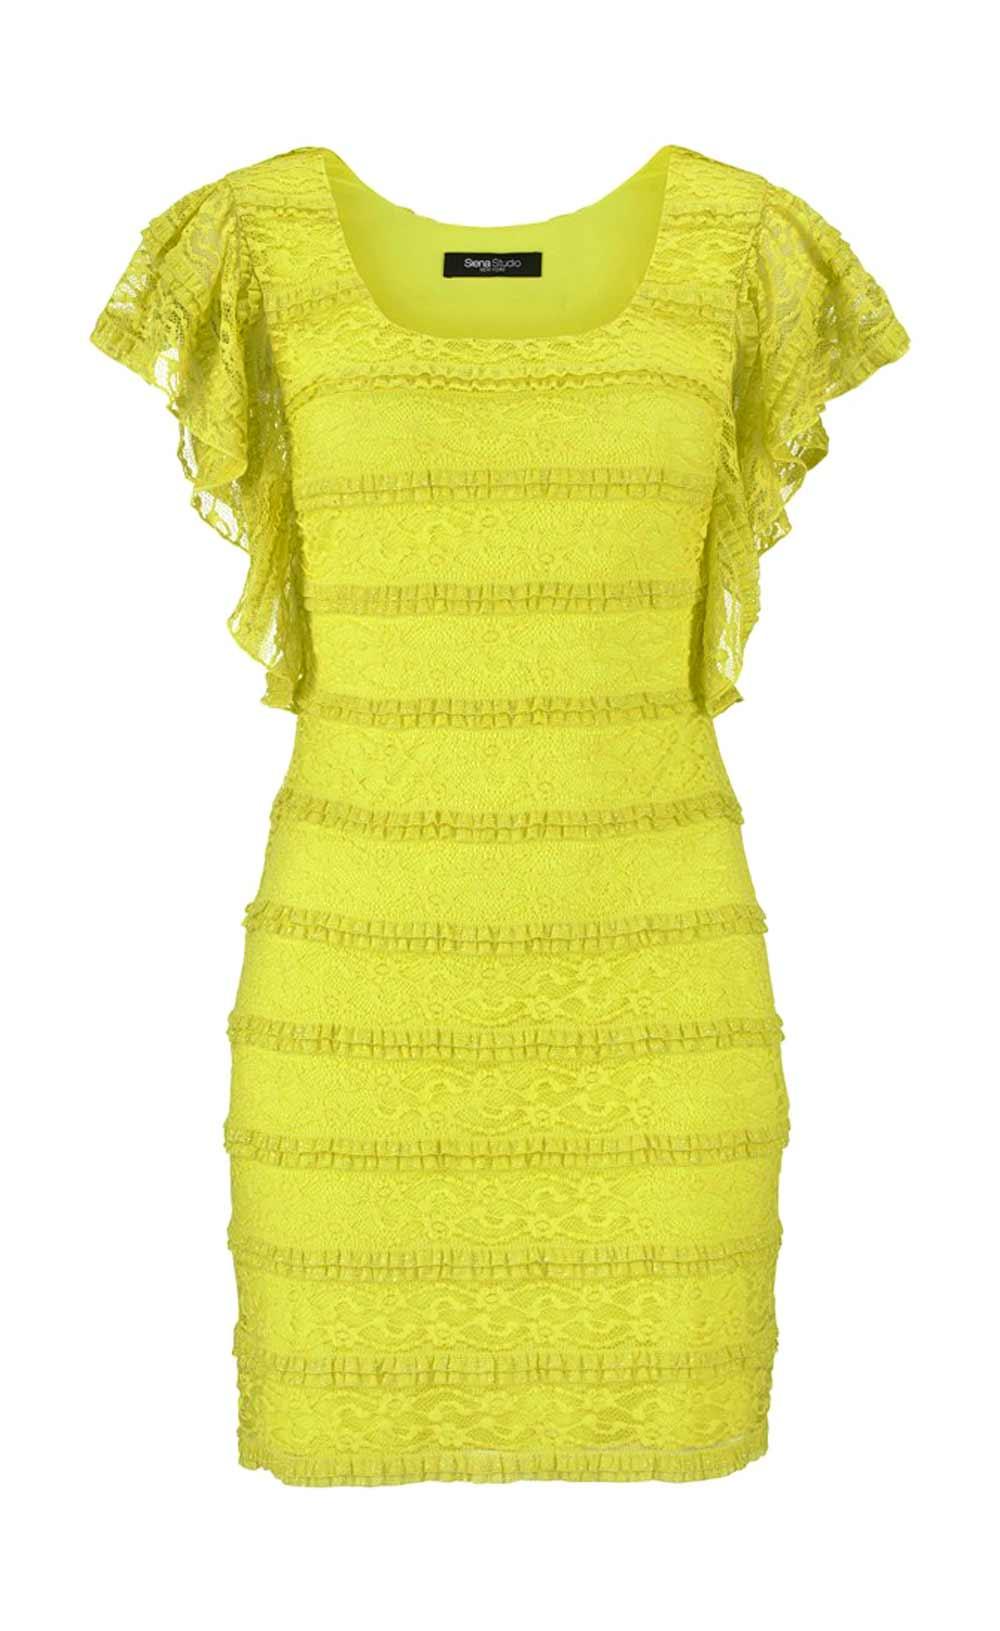 Marken-Spitzenkleid limone | Kleider | Outlet Mode-Shop